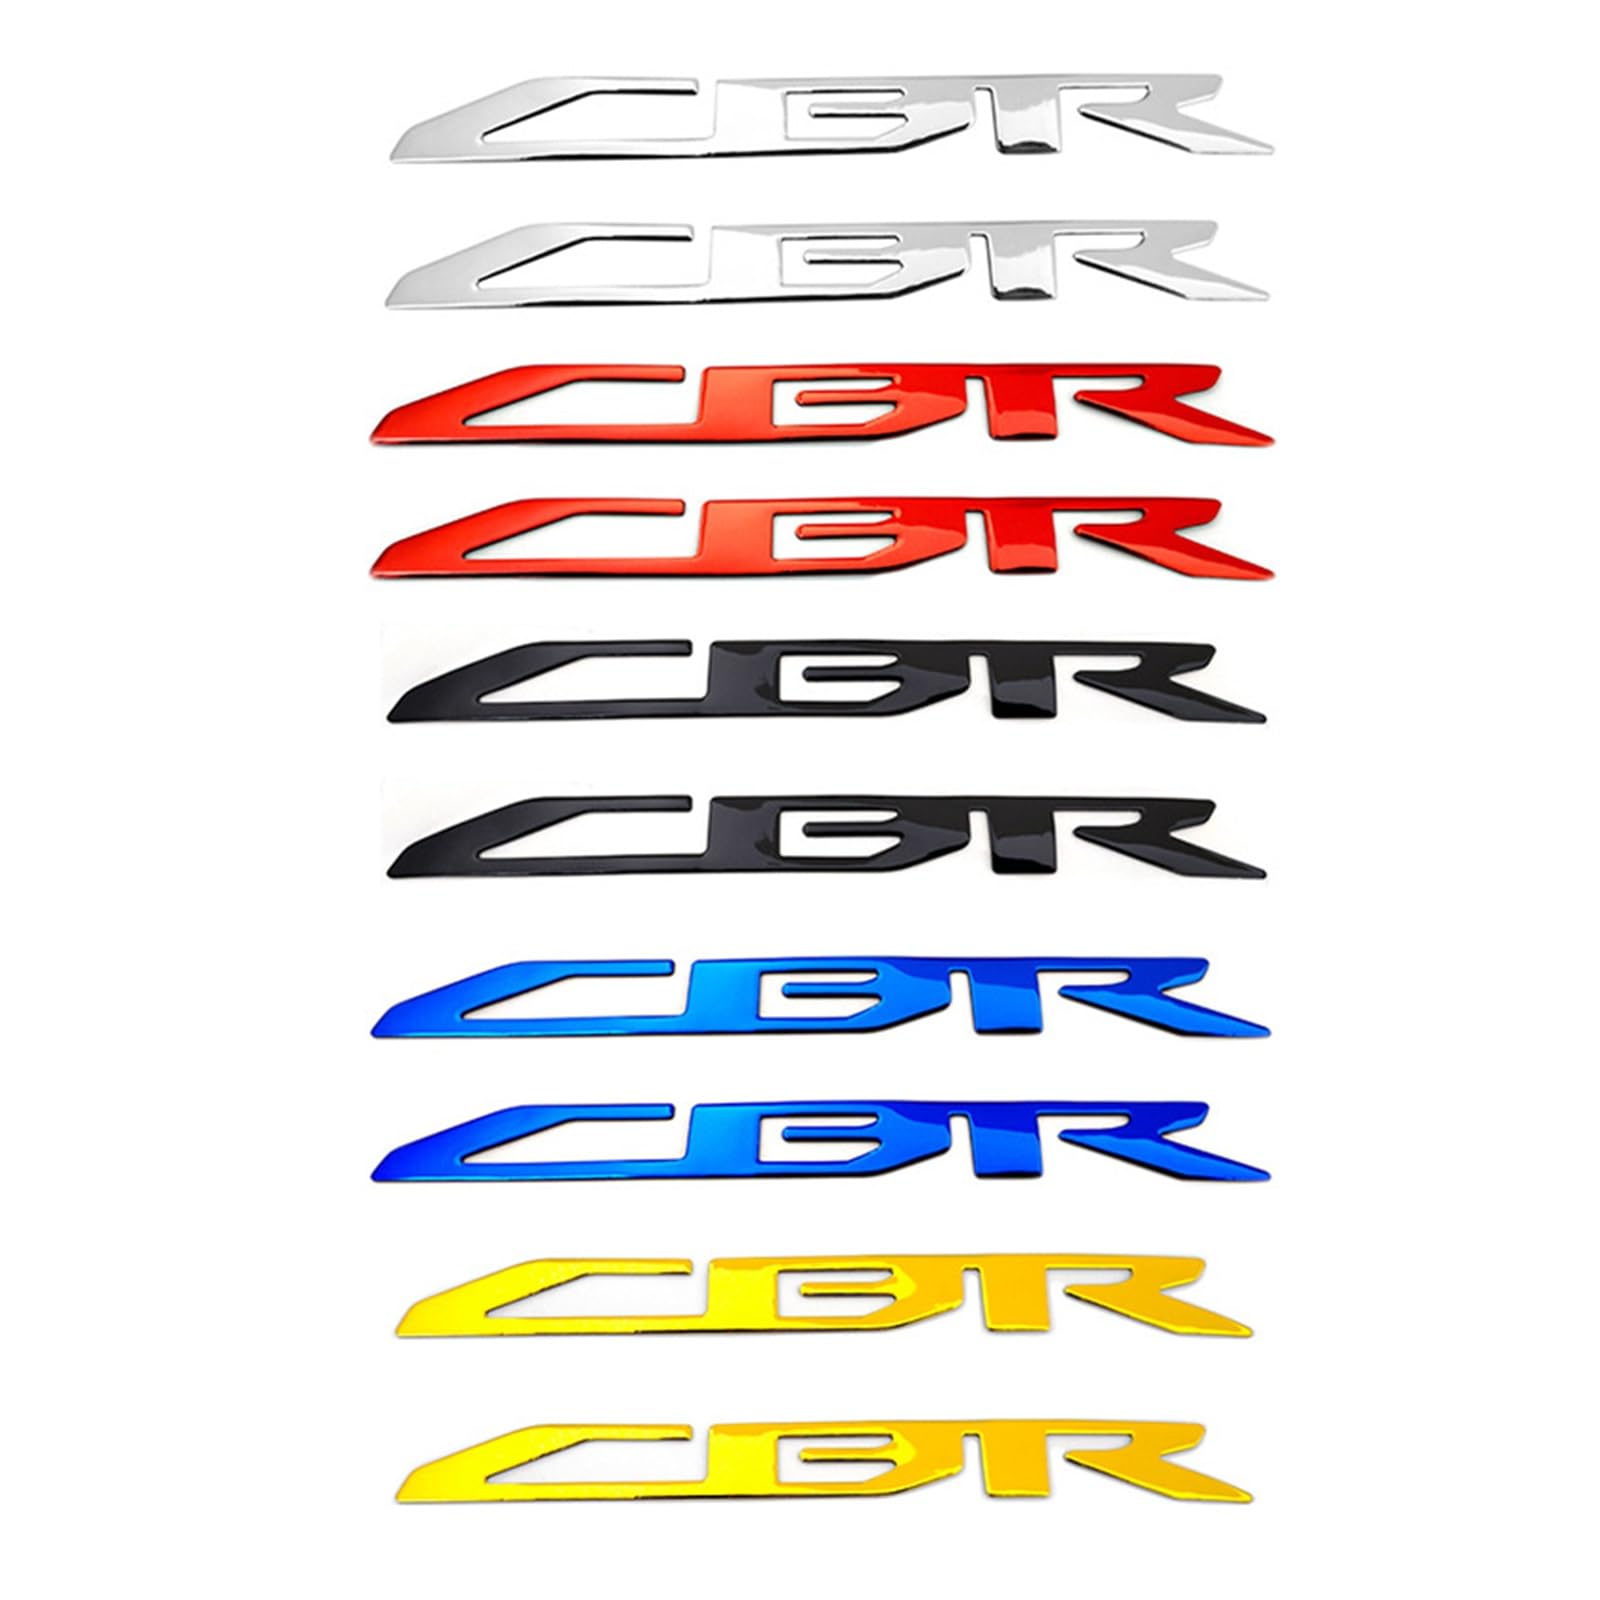 3D-Rennrad-Motorrad-Aufkleber-Emblem-Abzeichen-Gummi-Schutz CBR 250r 250rr 500r 650r 650f 954 Aufkleber (Farbe : ROT) von WITTSY